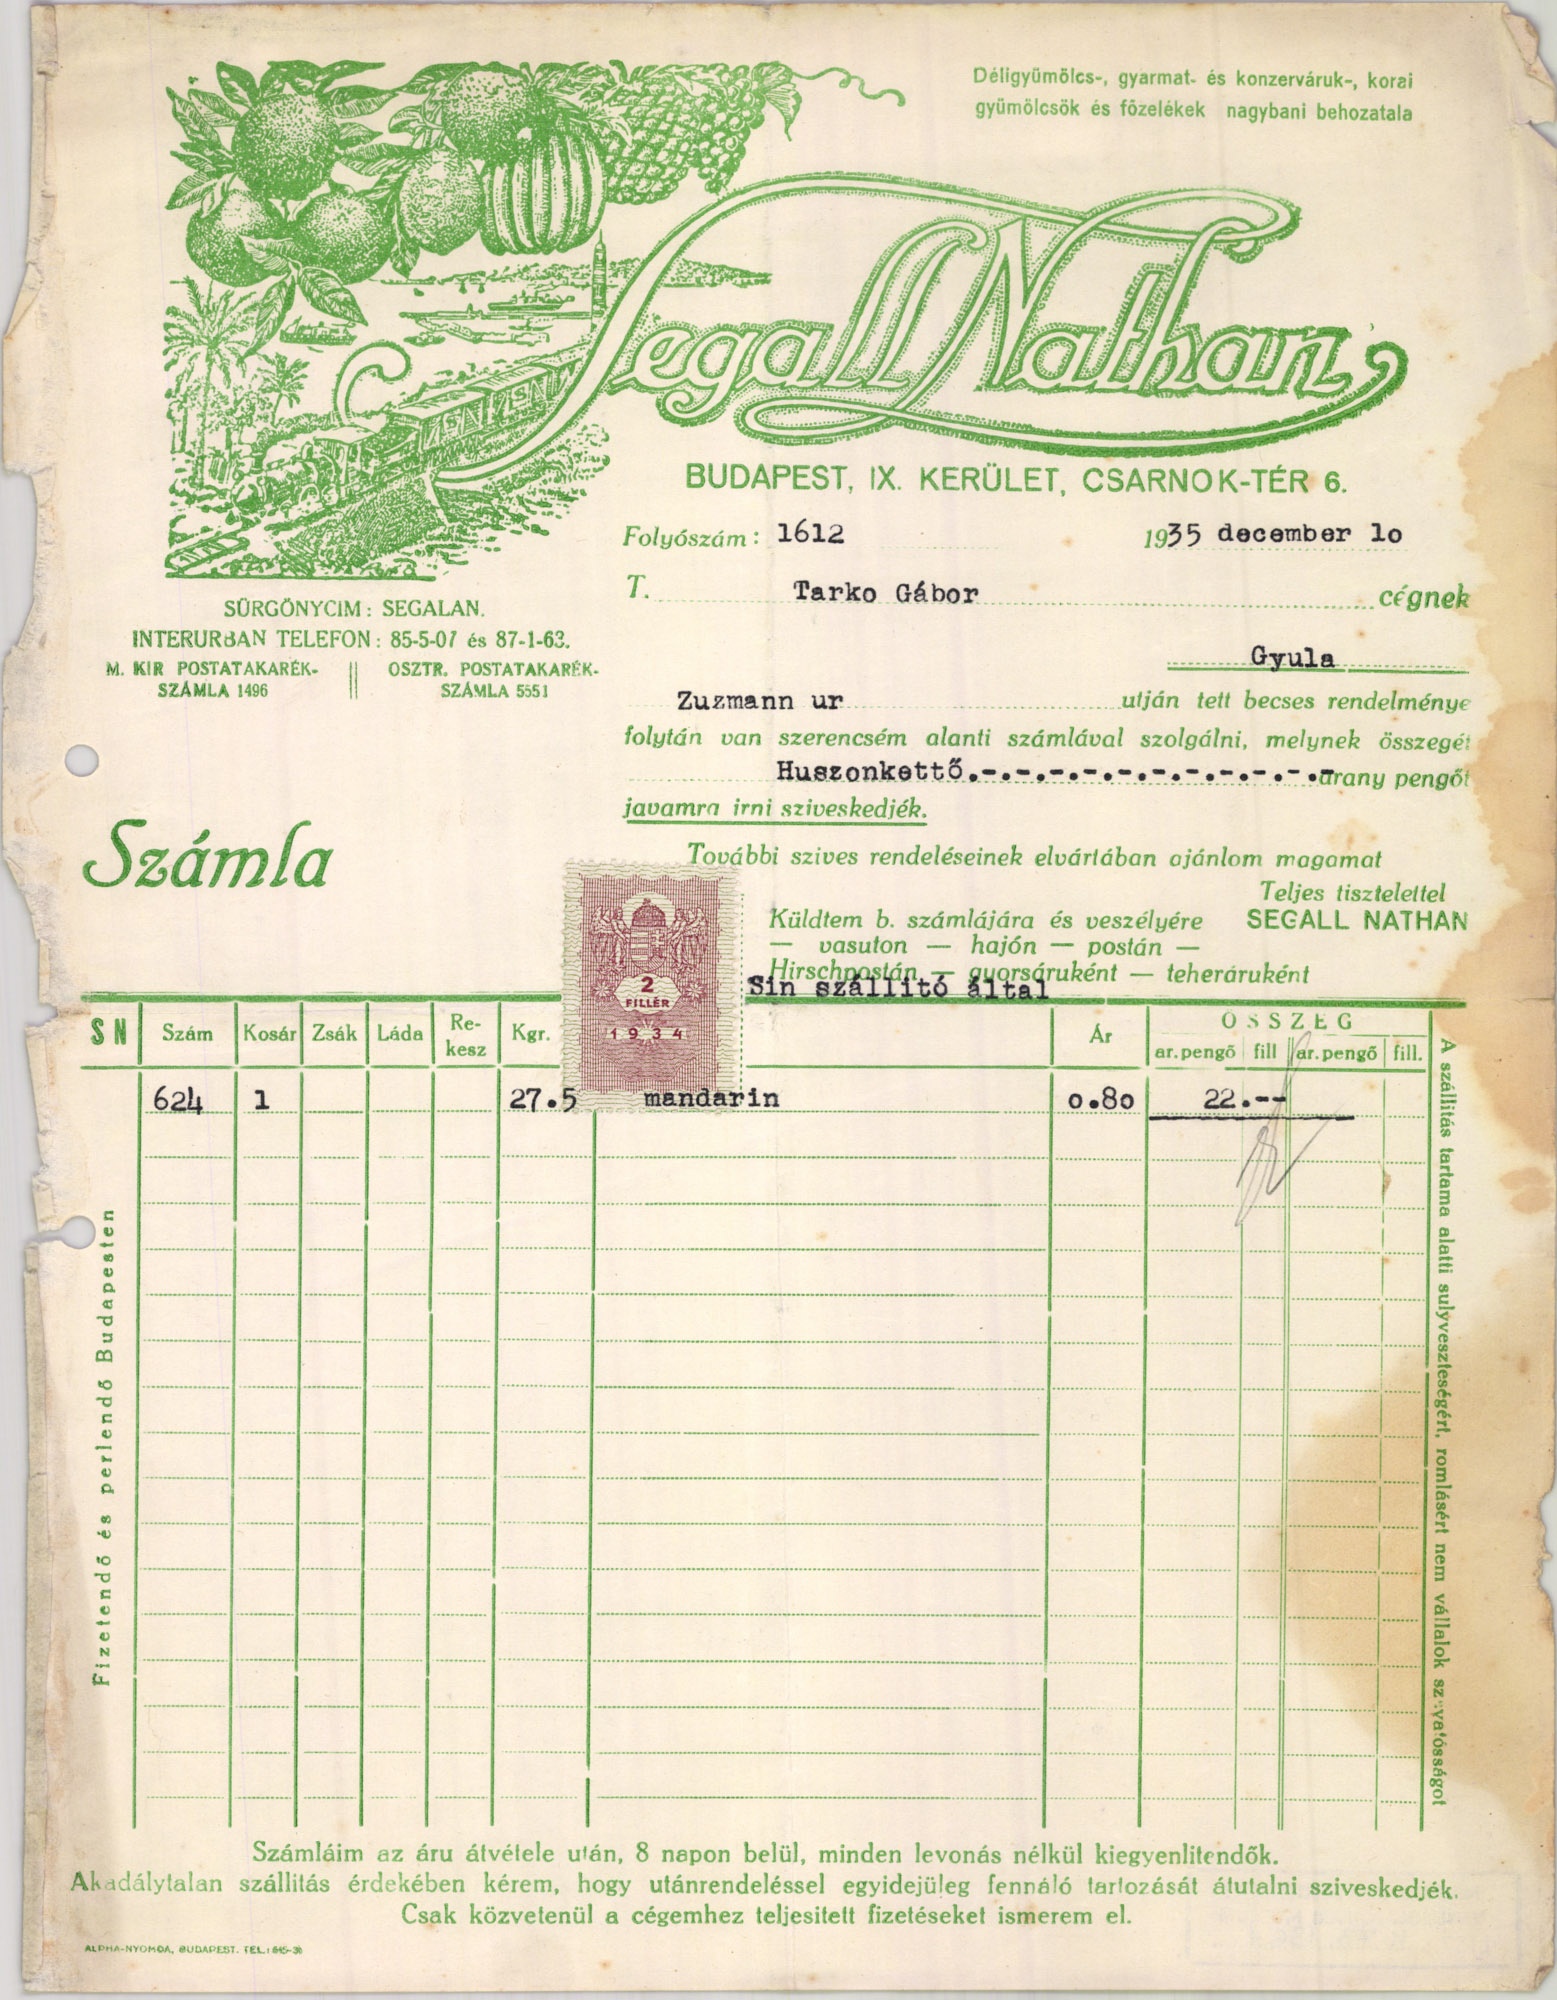 Segall Nathan déligyümölcs-, gyarmat- és konzerváruk-, korai gyümölcsök és főzelékek nagybani behozatala (Magyar Kereskedelmi és Vendéglátóipari Múzeum CC BY-NC-SA)